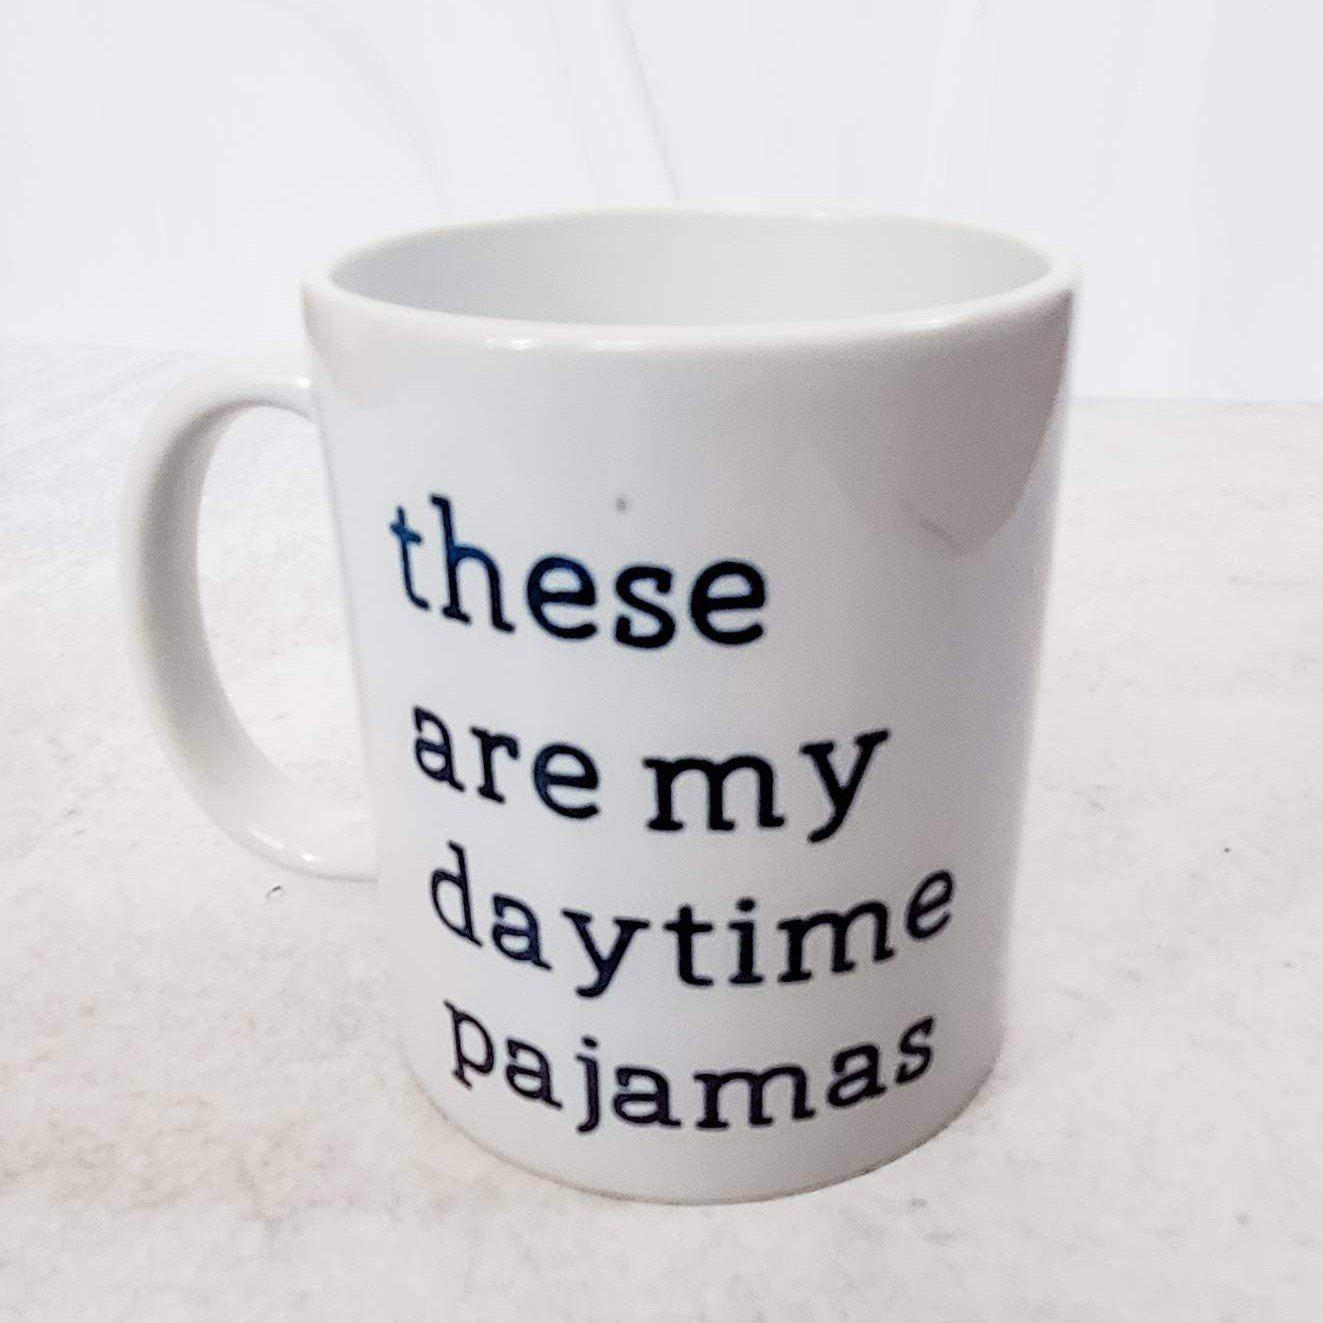 These Are My Daytime Pajamas Coffee Mug Salt and Sparkle